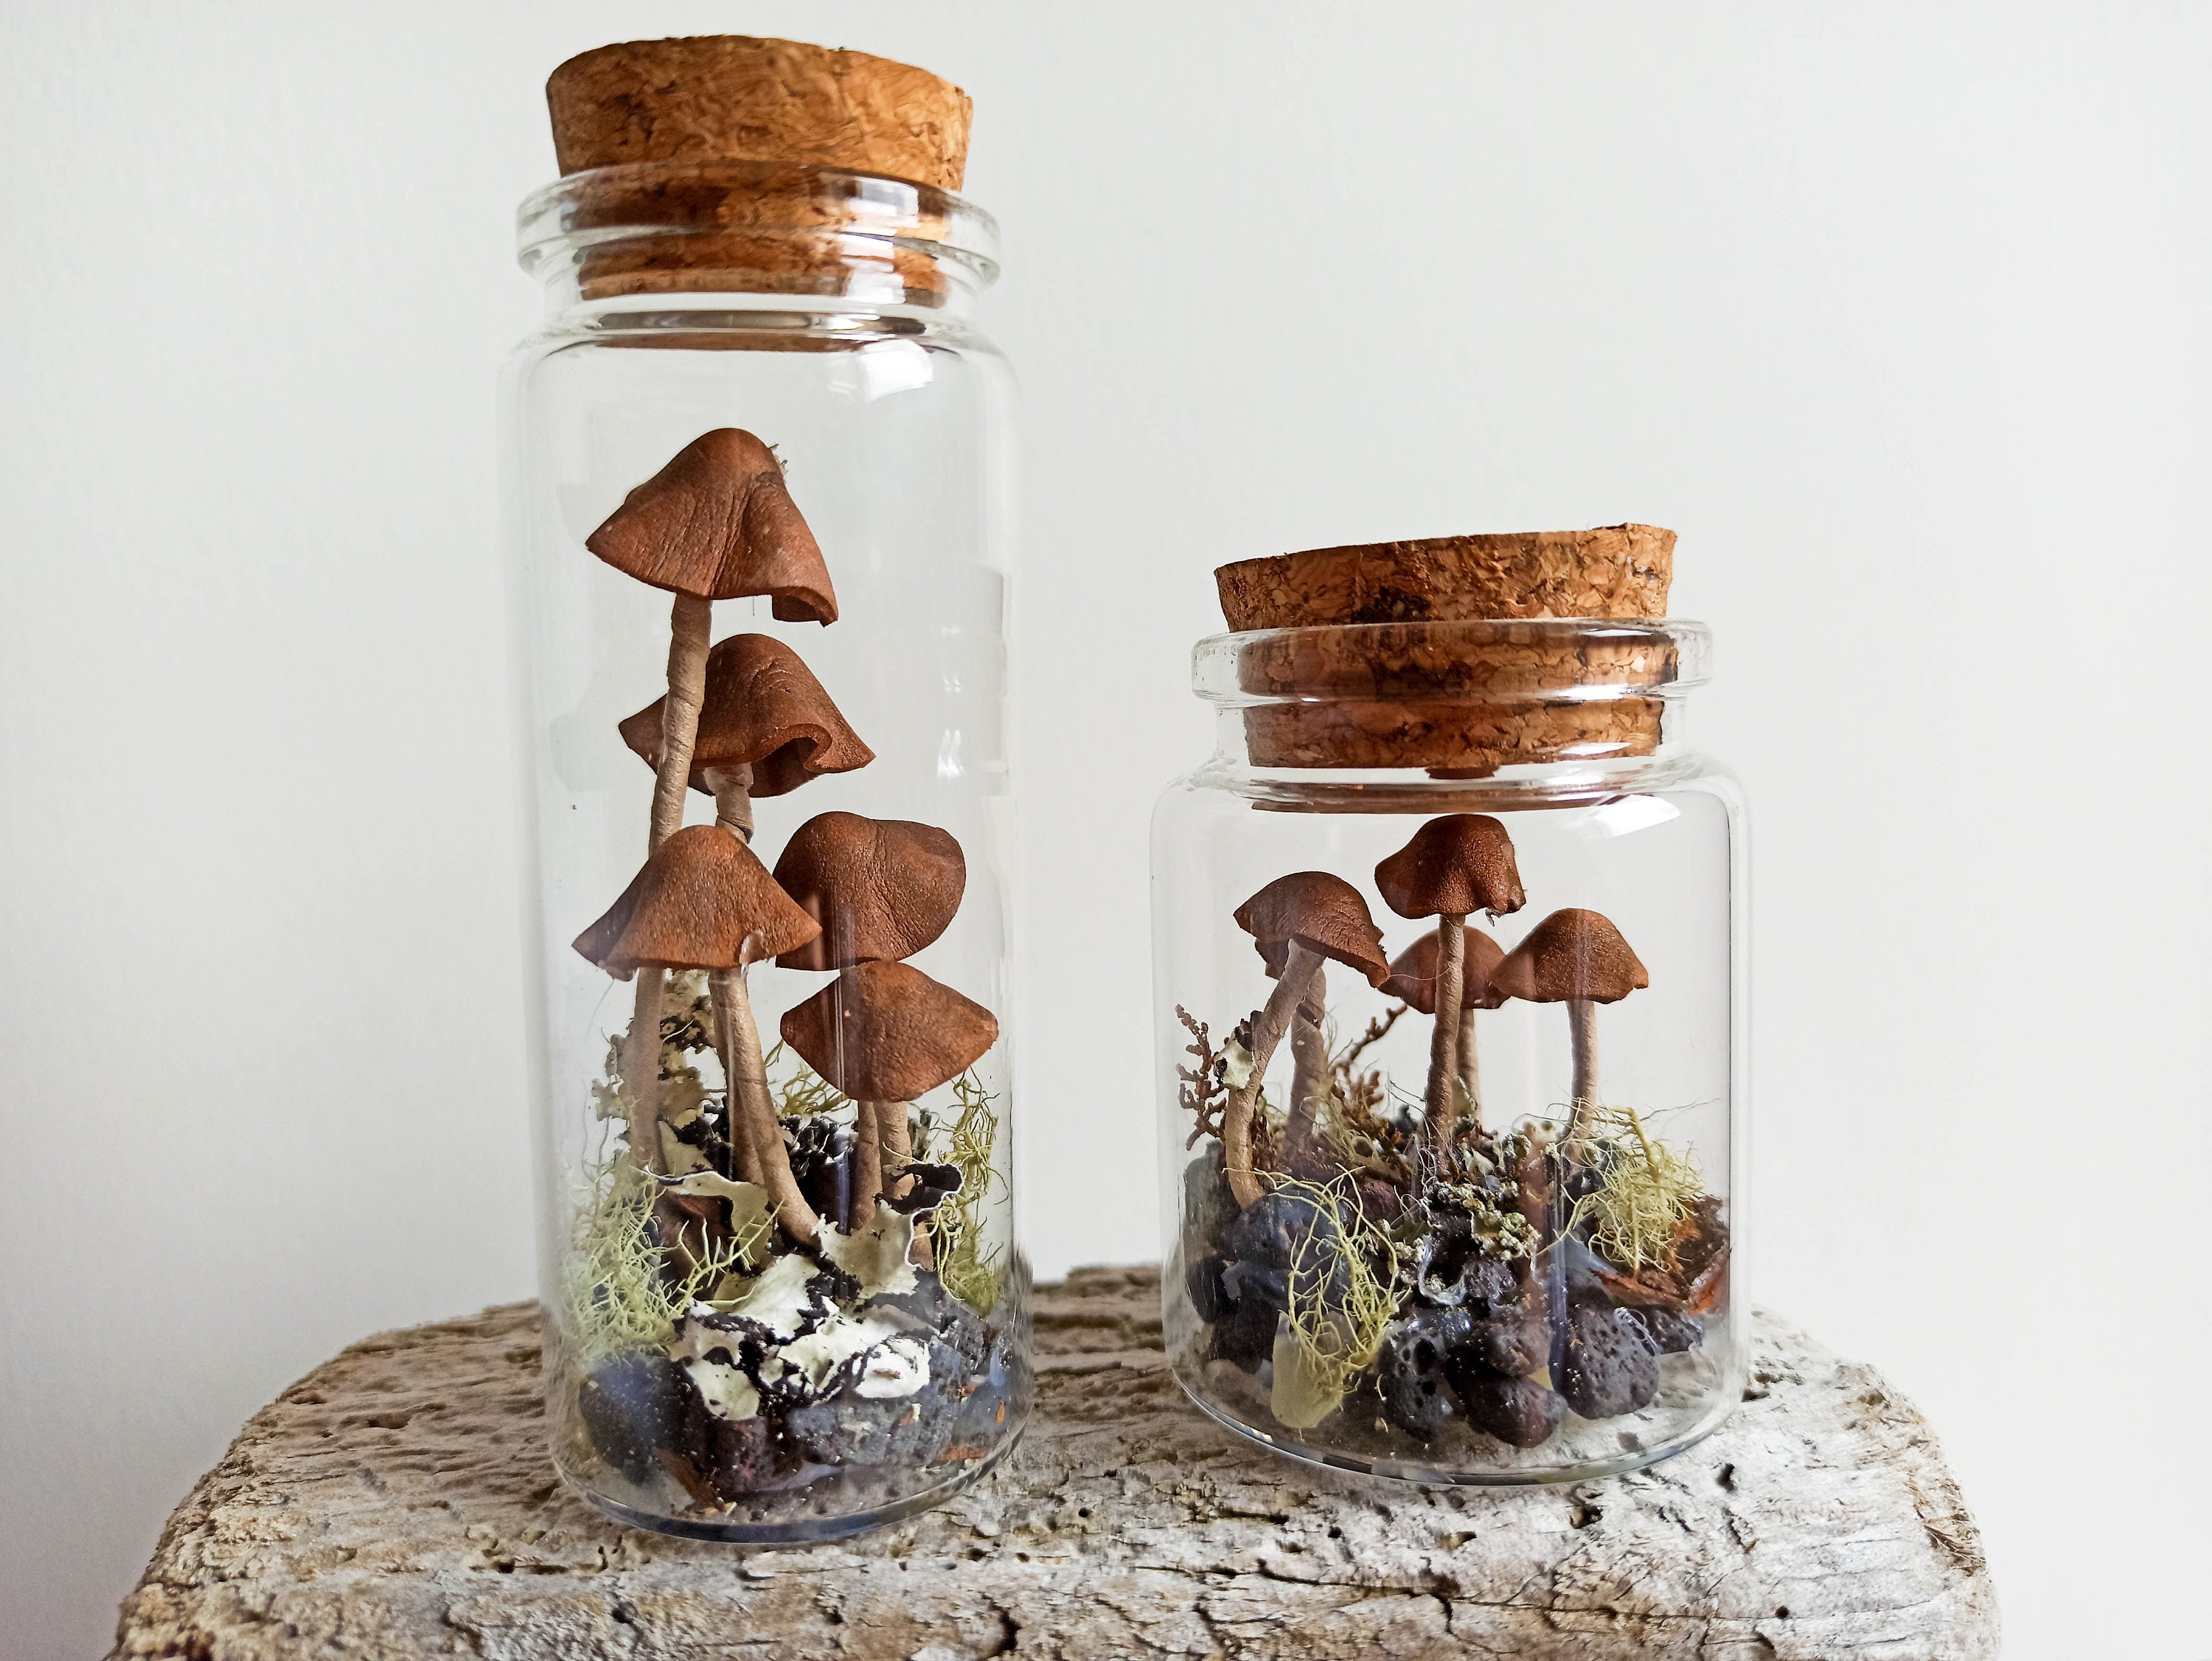 Mushroom Terrarium Jar, Mushroom Ornament Christmas, Fairy